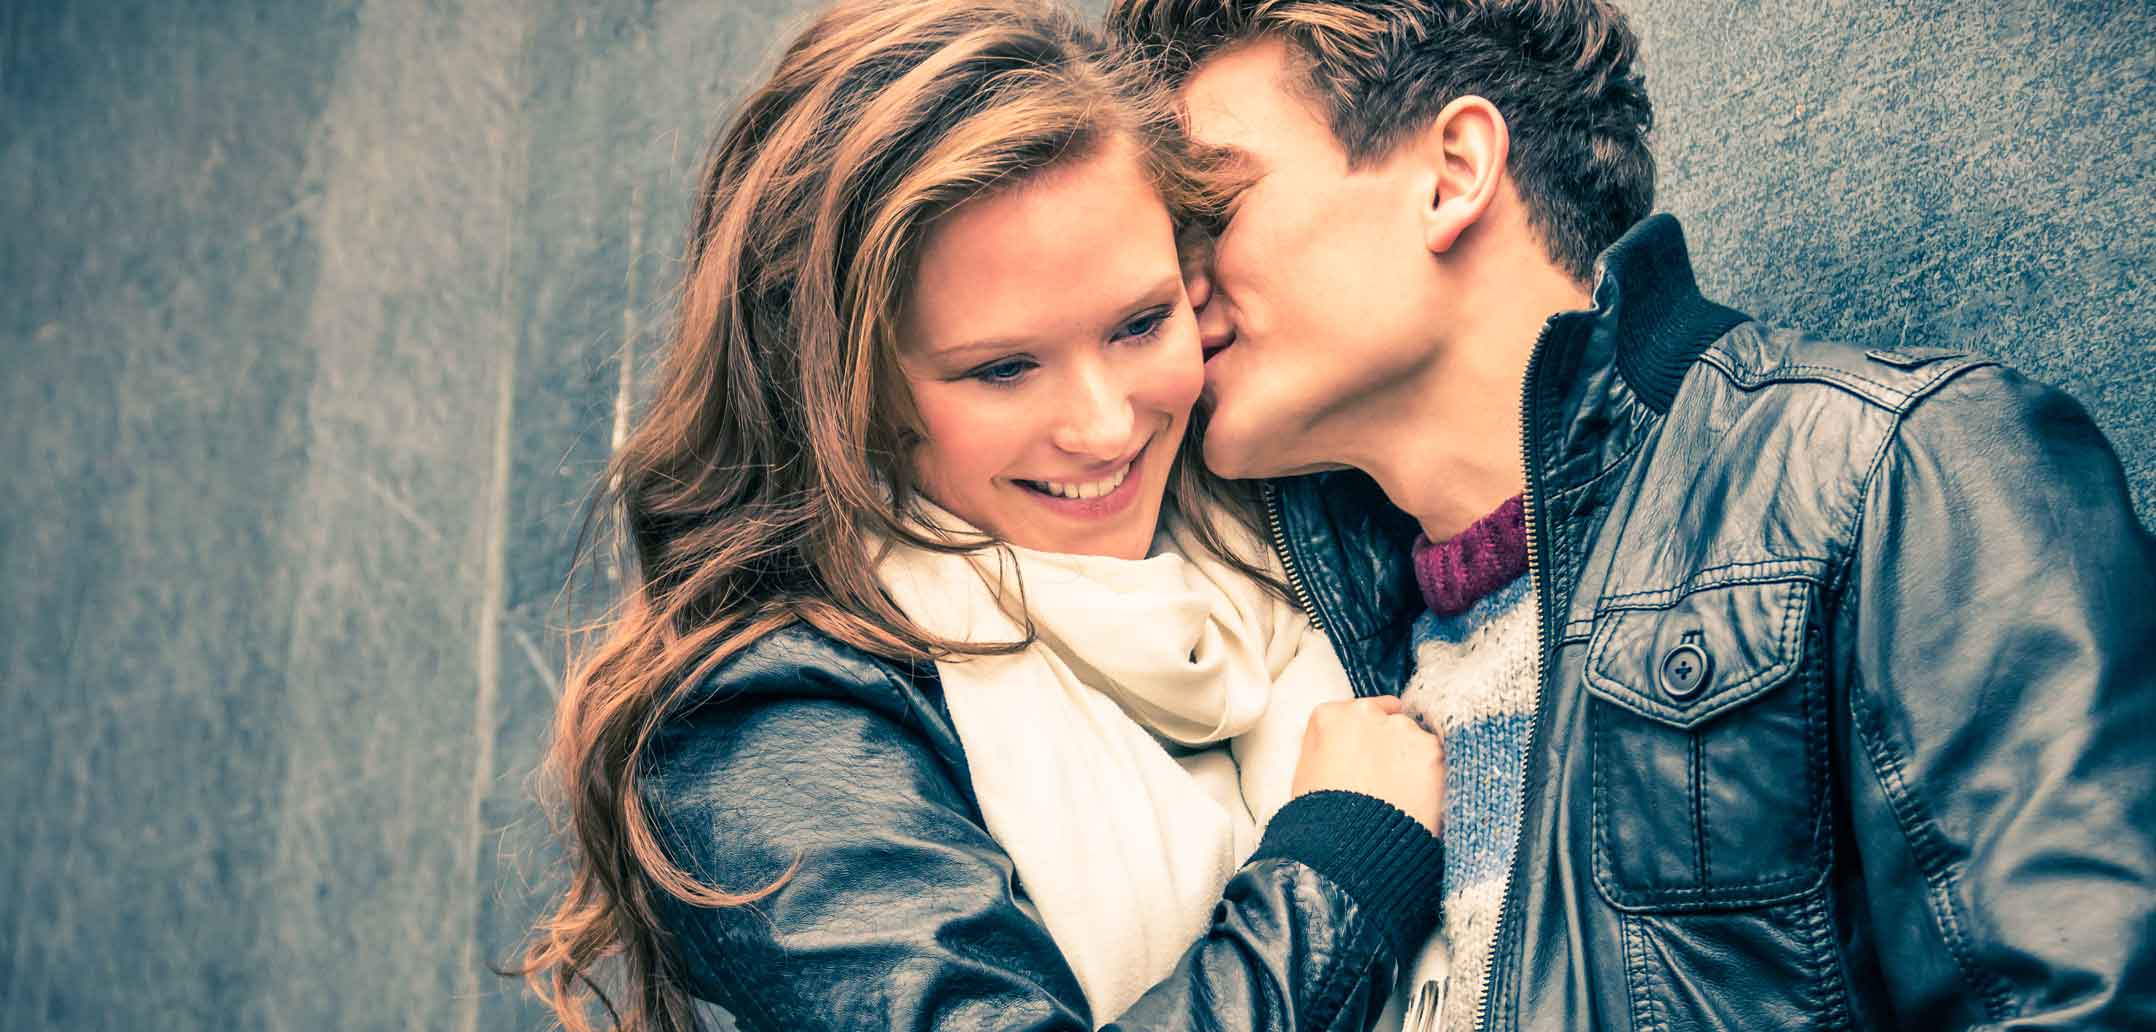 Pheromone: Der Grund, warum wir jemanden "gut riechen" können